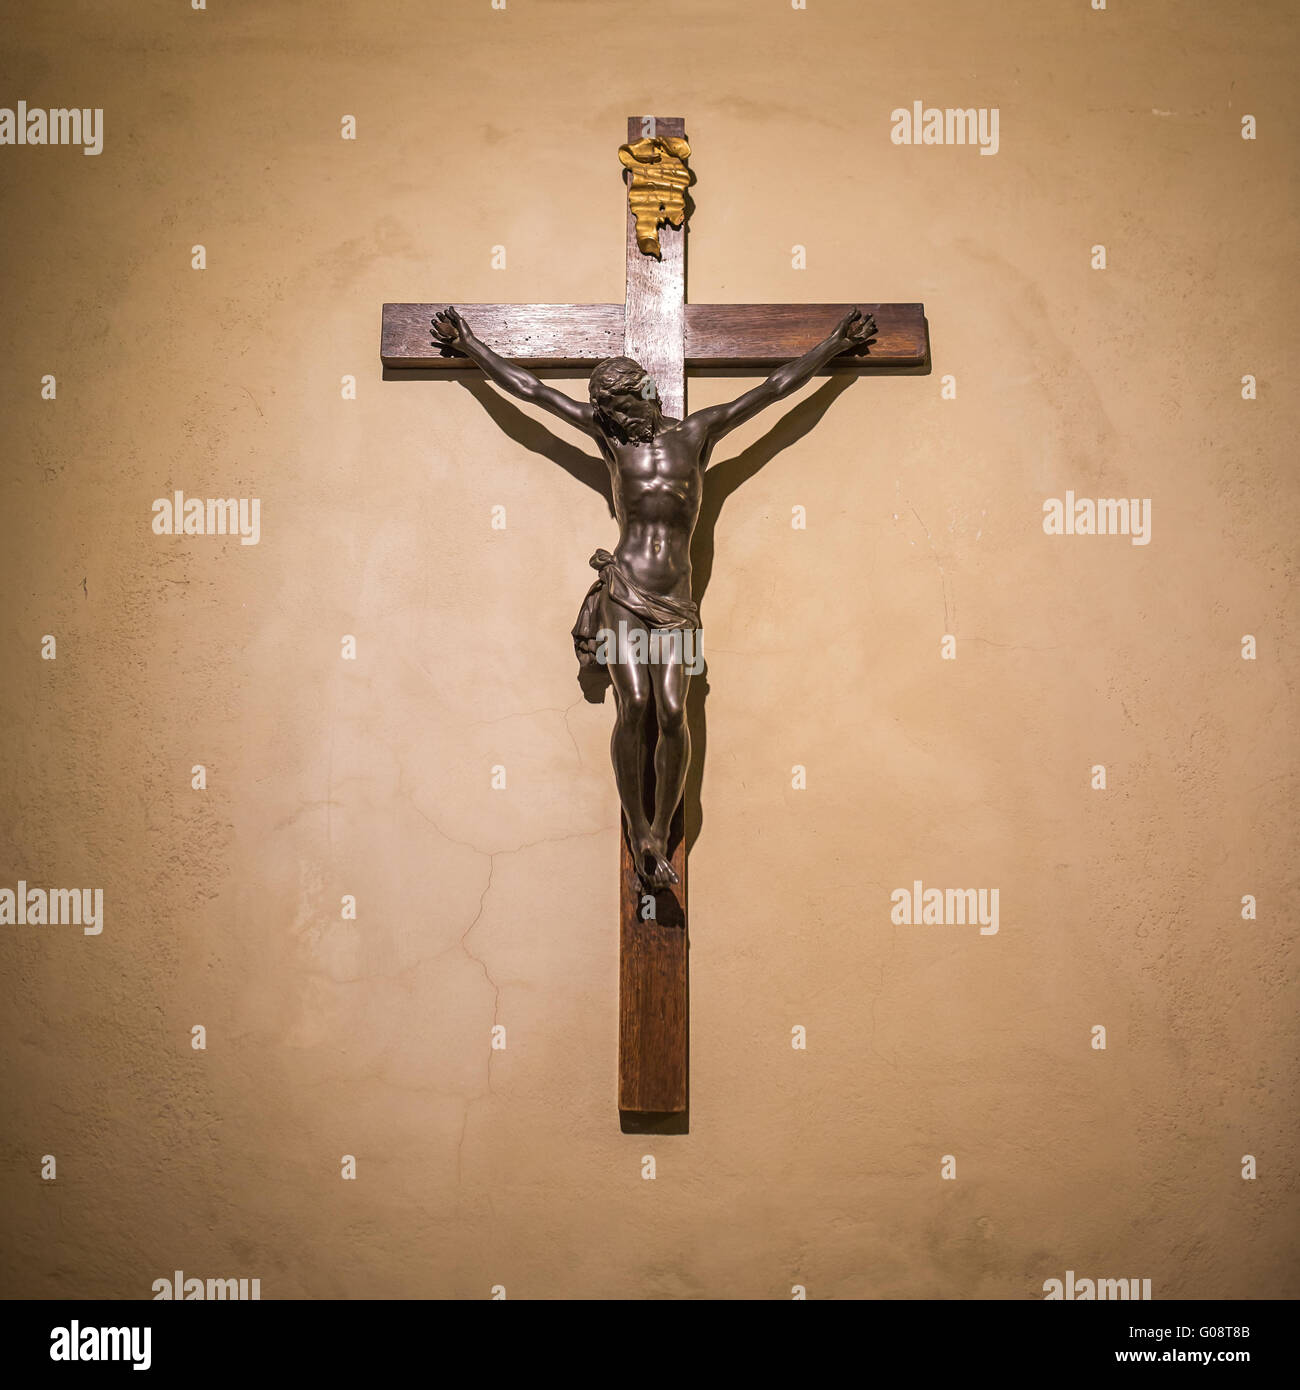 Crocifisso sulla parete in Spotlight. Gesù Cristo sulla croce. La religione, fede e speranza. Santo e luoghi sacri. Foto Stock